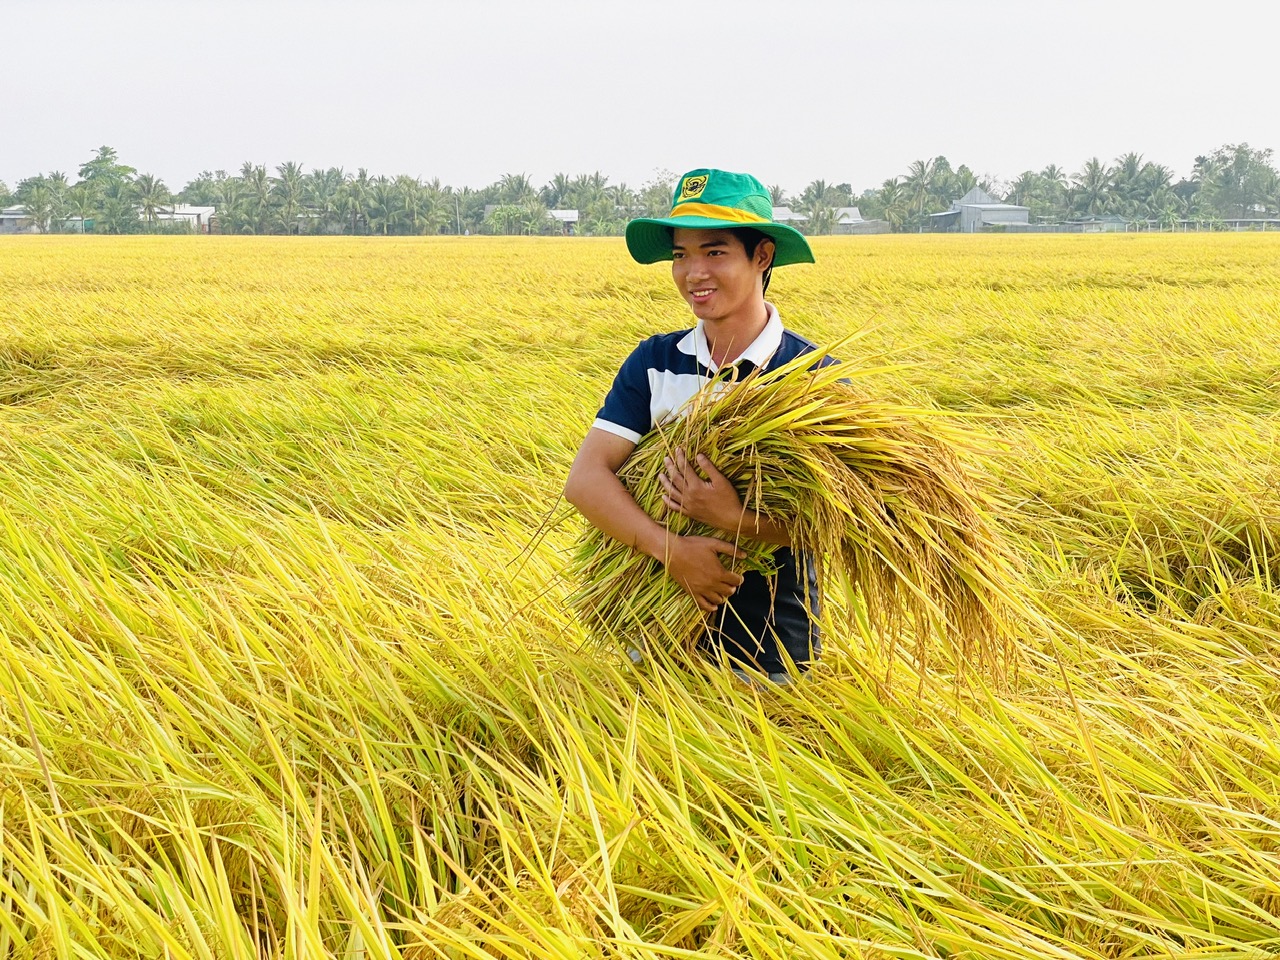 Lúa gạo được mùa trúng giá giúp Công ty phân bón Bình Điền kinh doanh thuận lợi